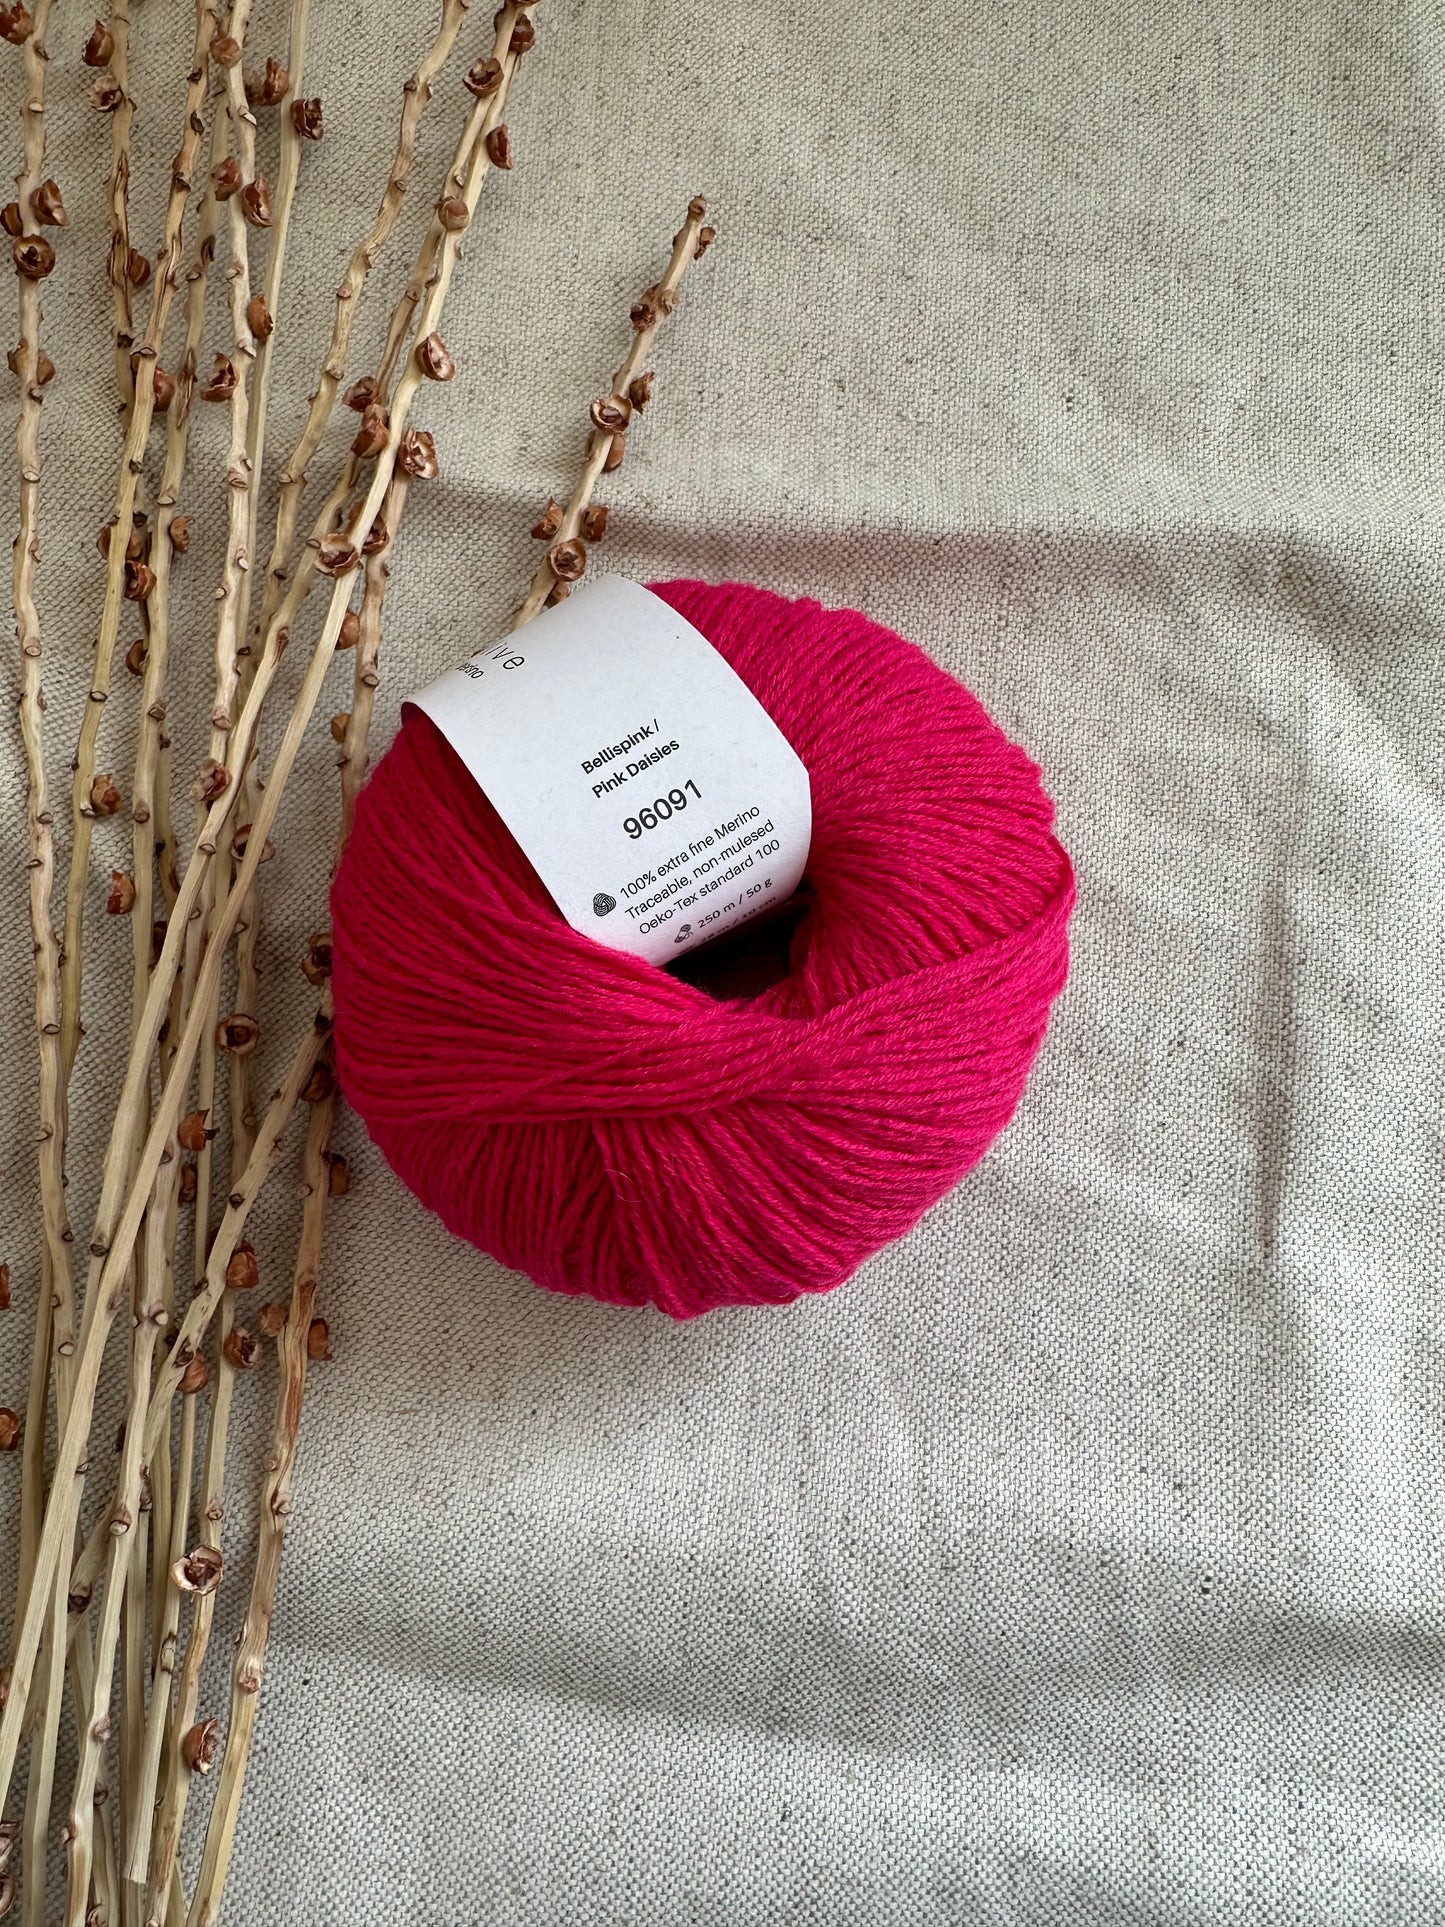 Knitting For Olive Merino